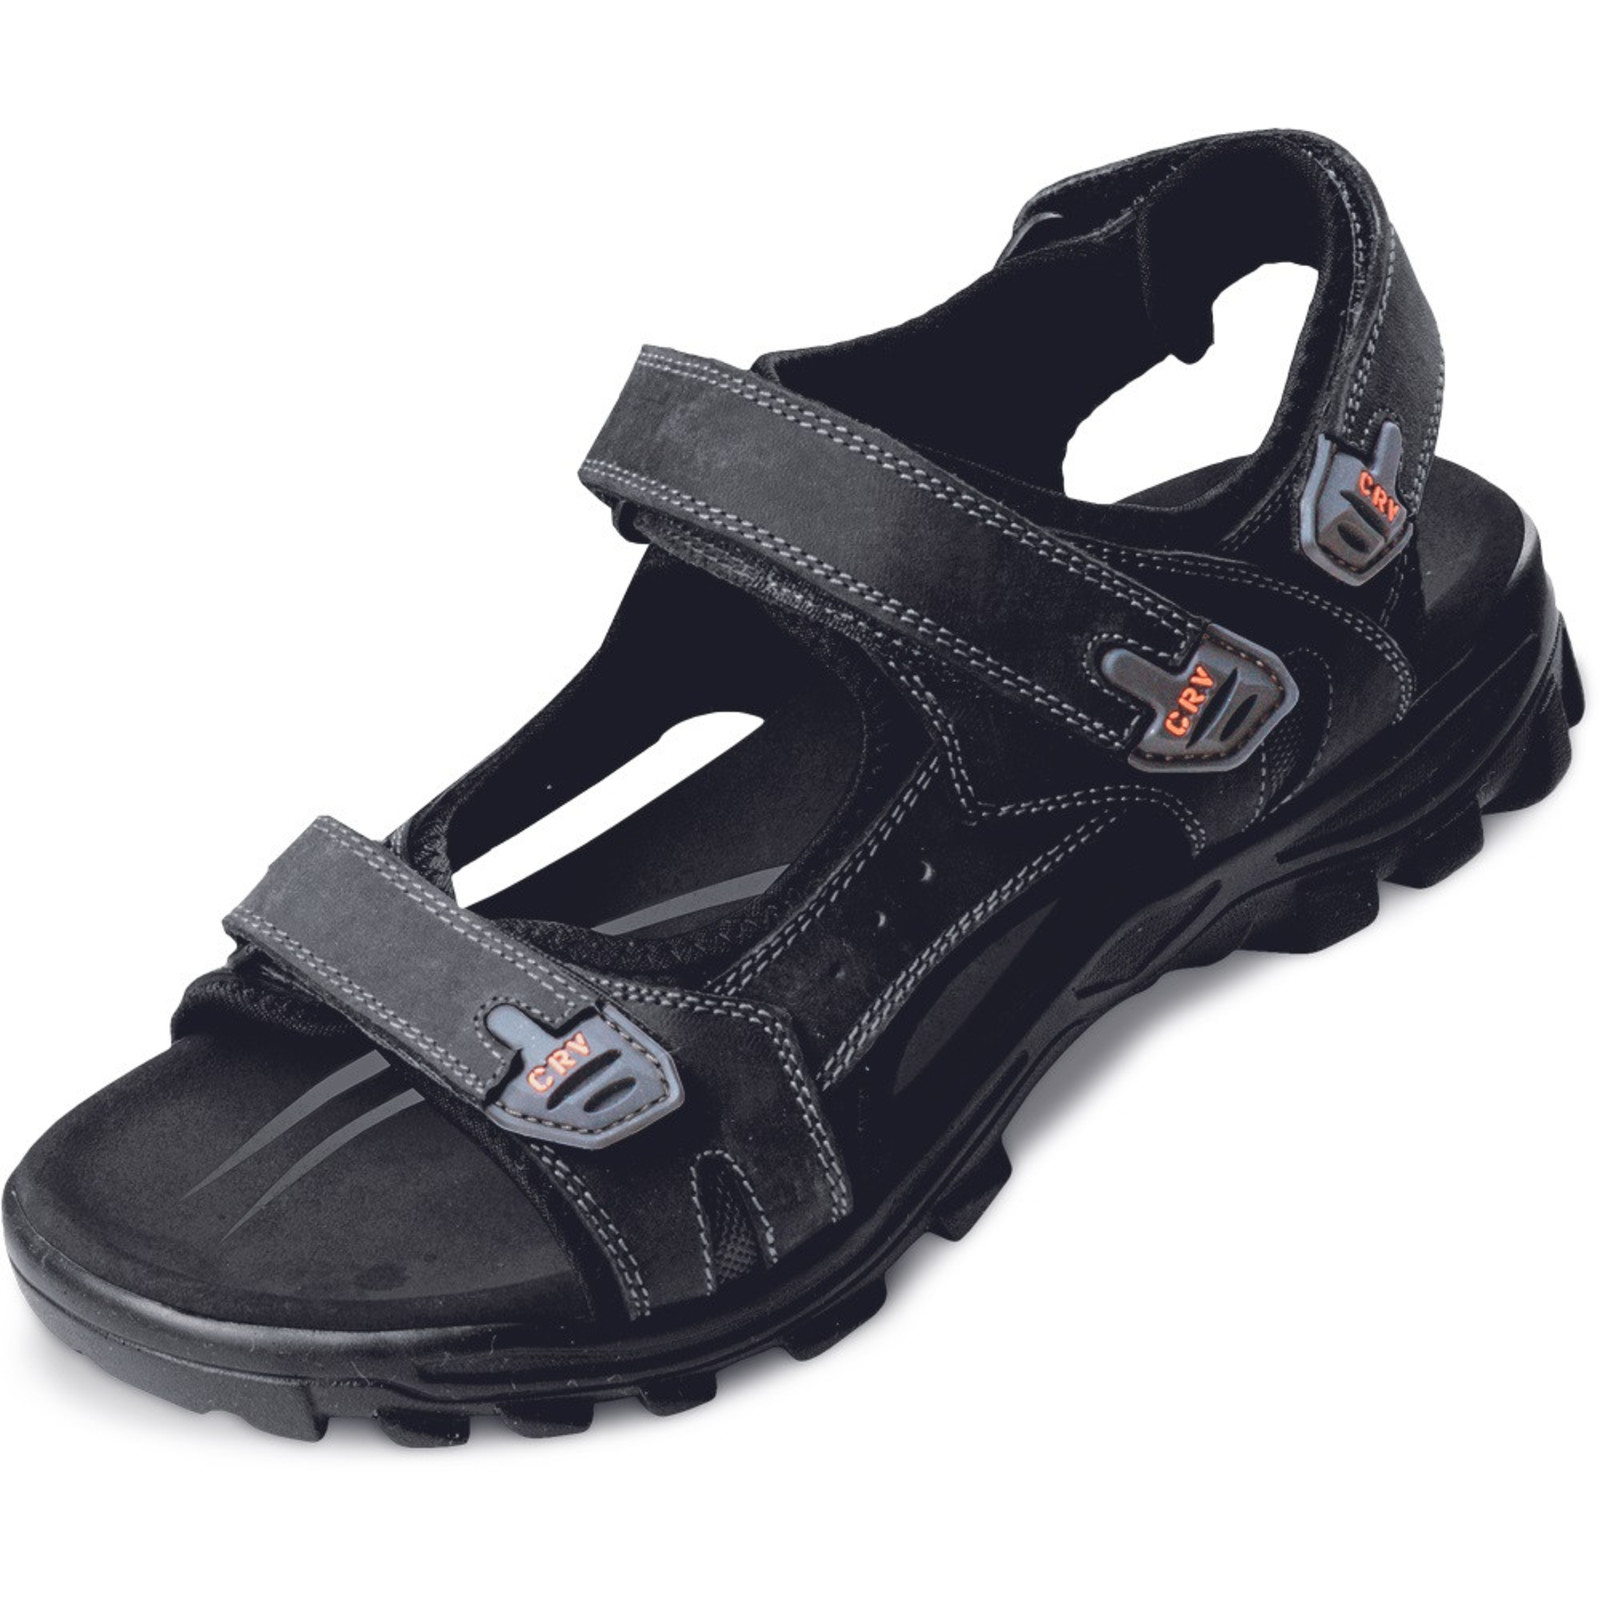 Sandále Wulik CRV pánske - veľkosť: 46, farba: čierna